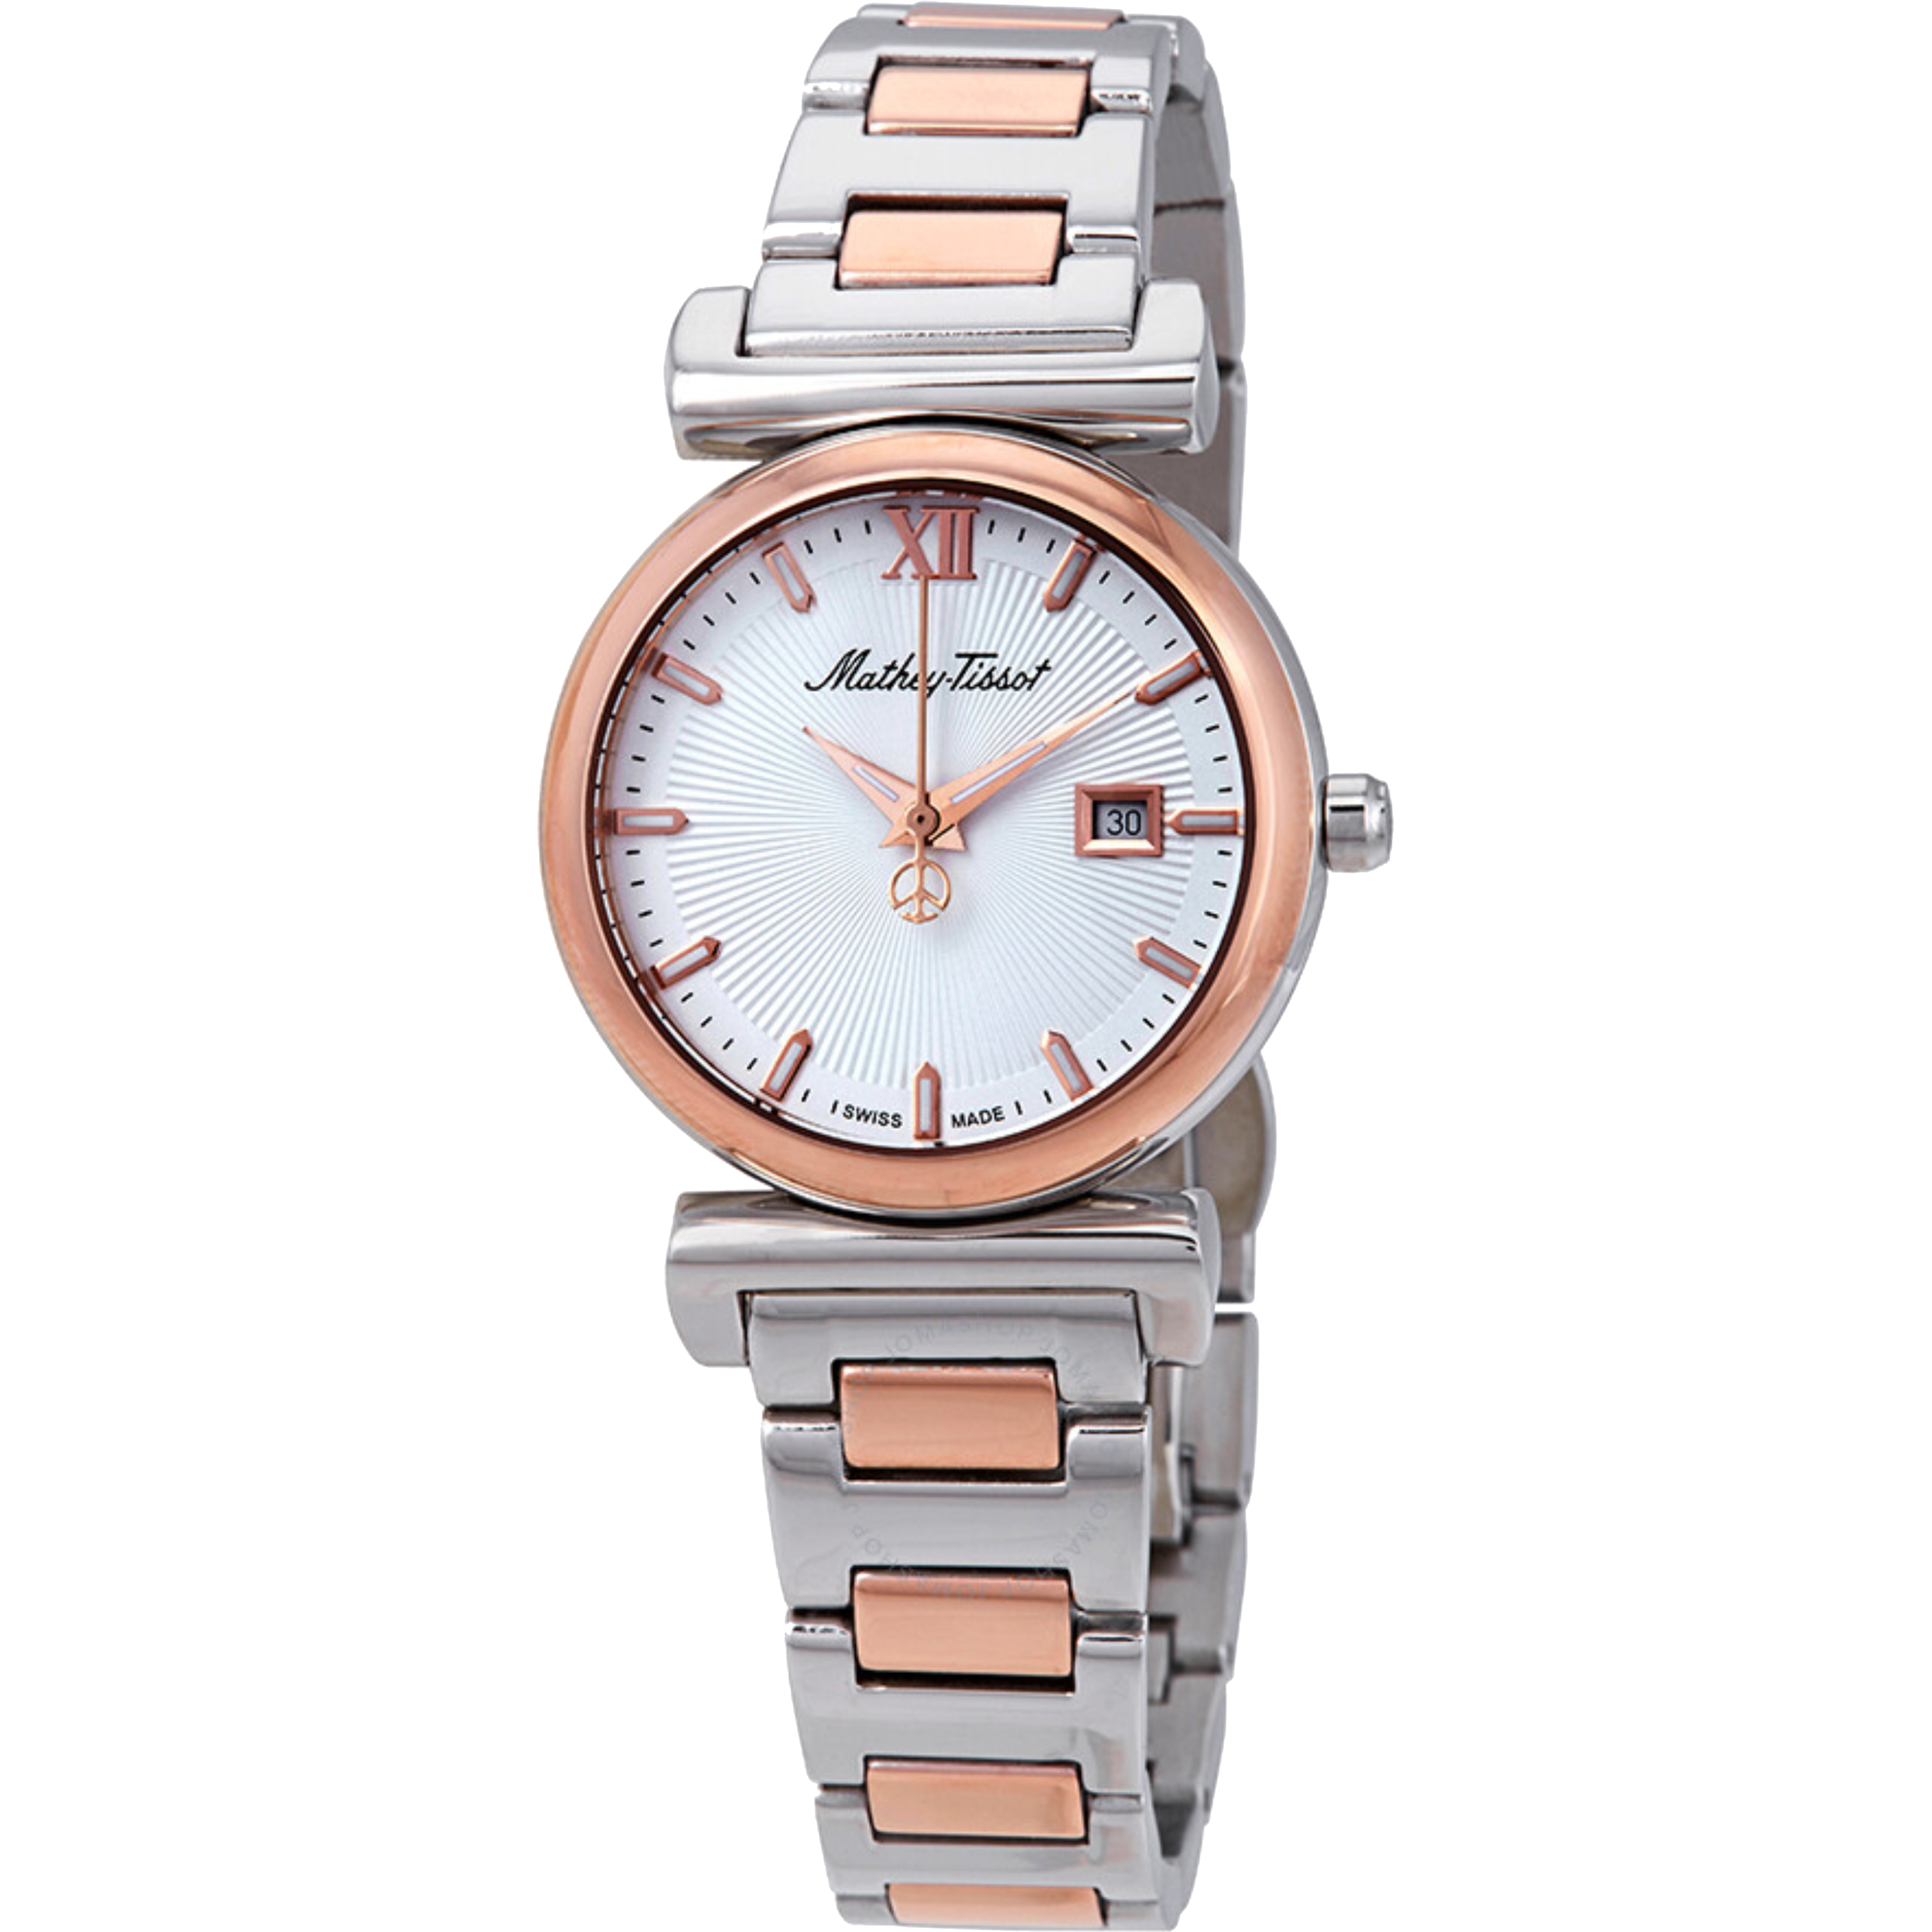 שעון יד לאישה Mathey Tissot D410BI 32mm צבע כסף/רוז גולד/זכוכית ספיר - אחריות לשנה ע"י היבואן